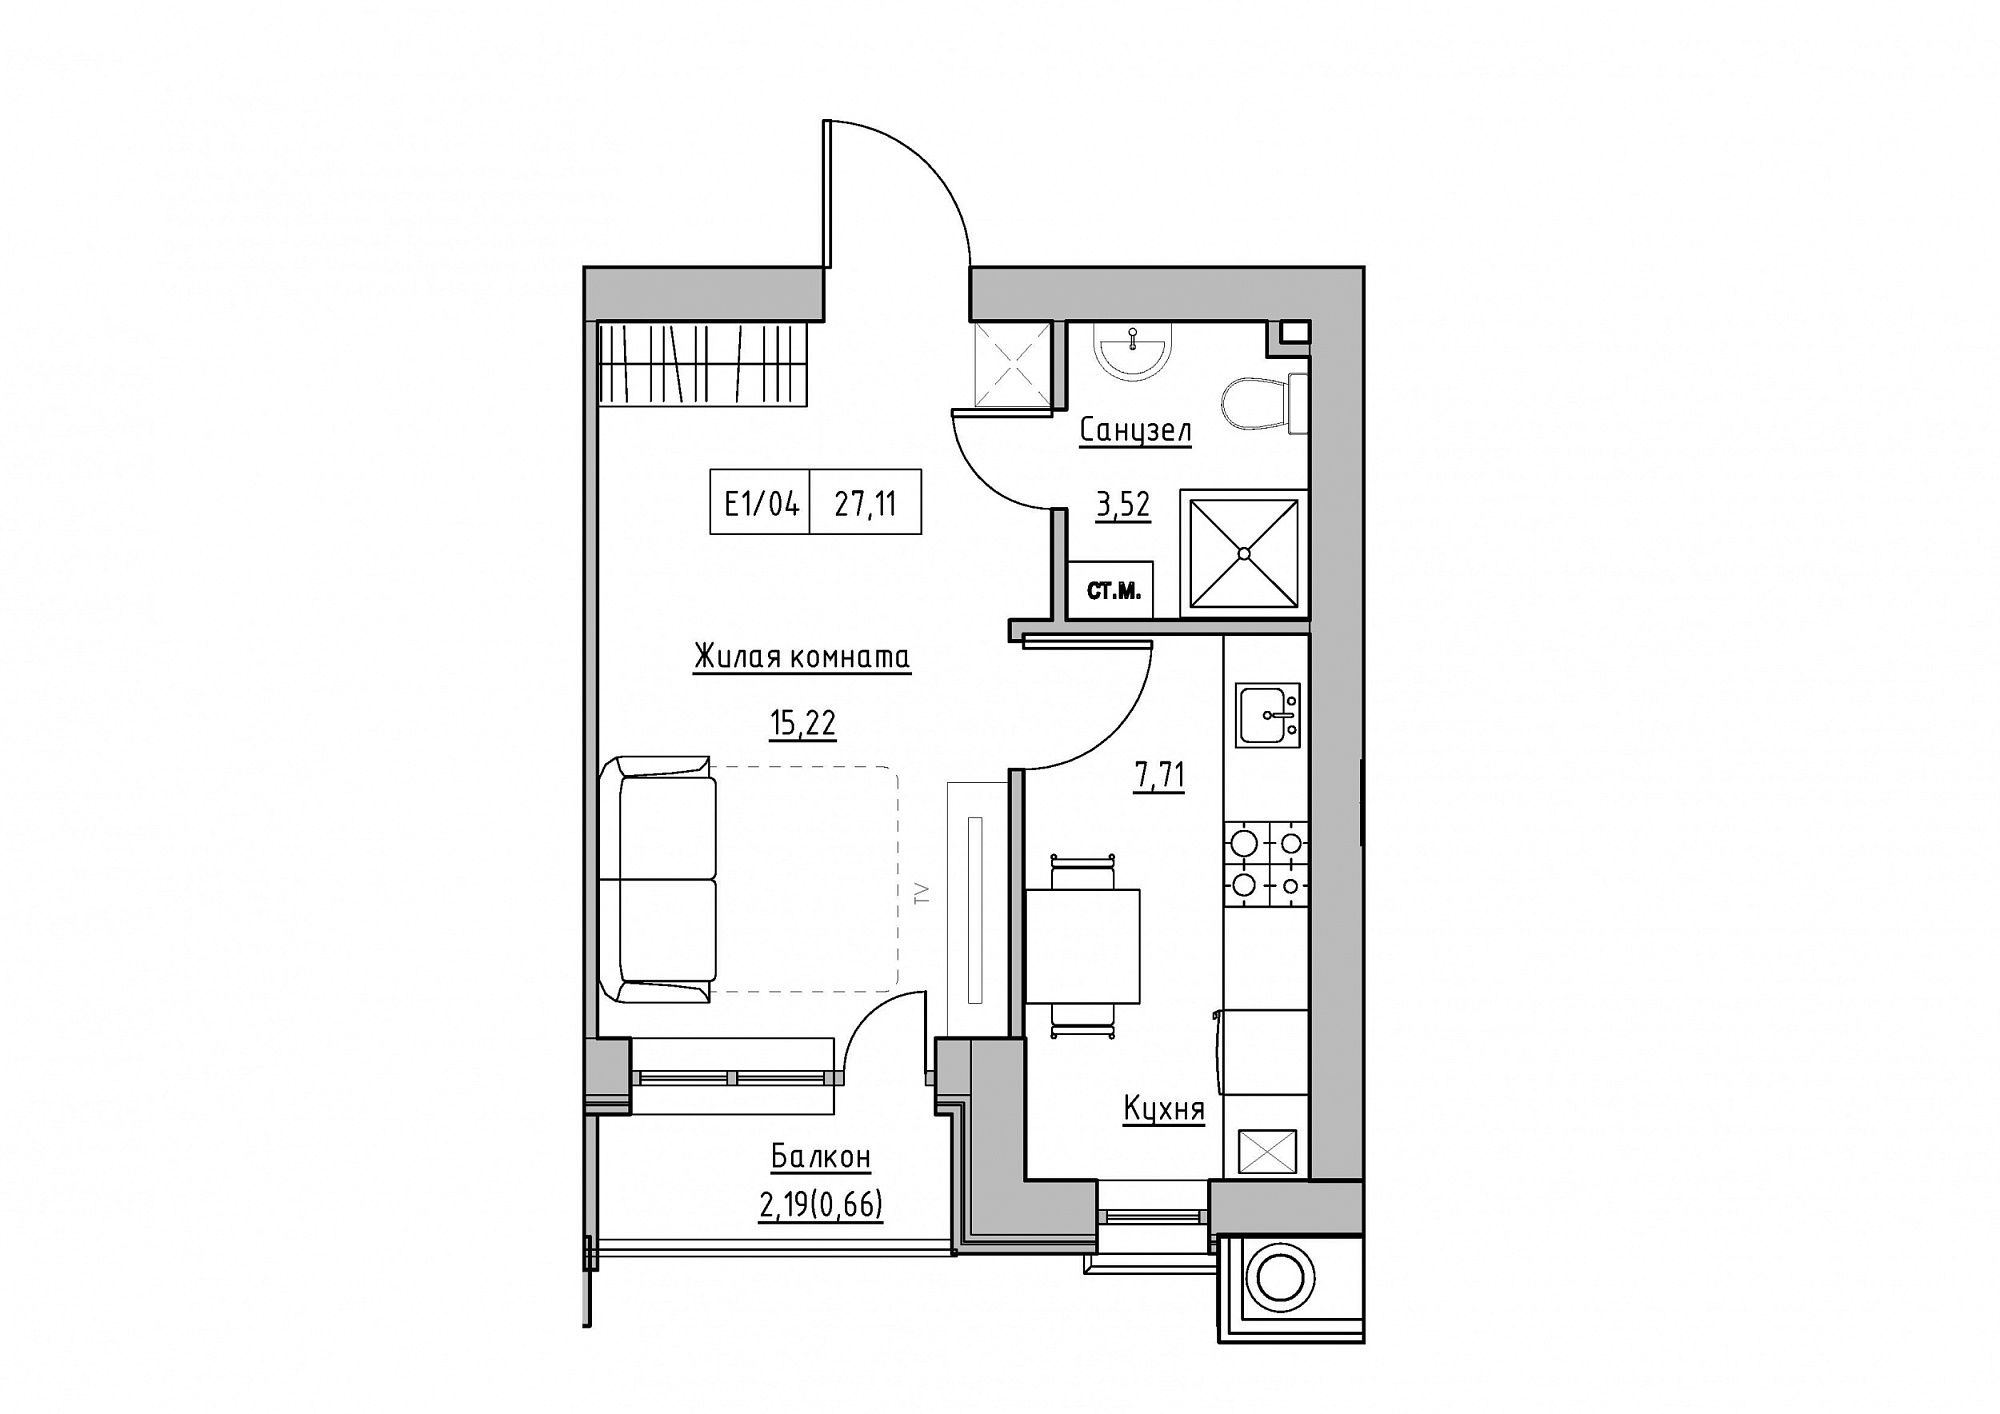 Планування 1-к квартира площею 27.11м2, KS-011-05/0011.